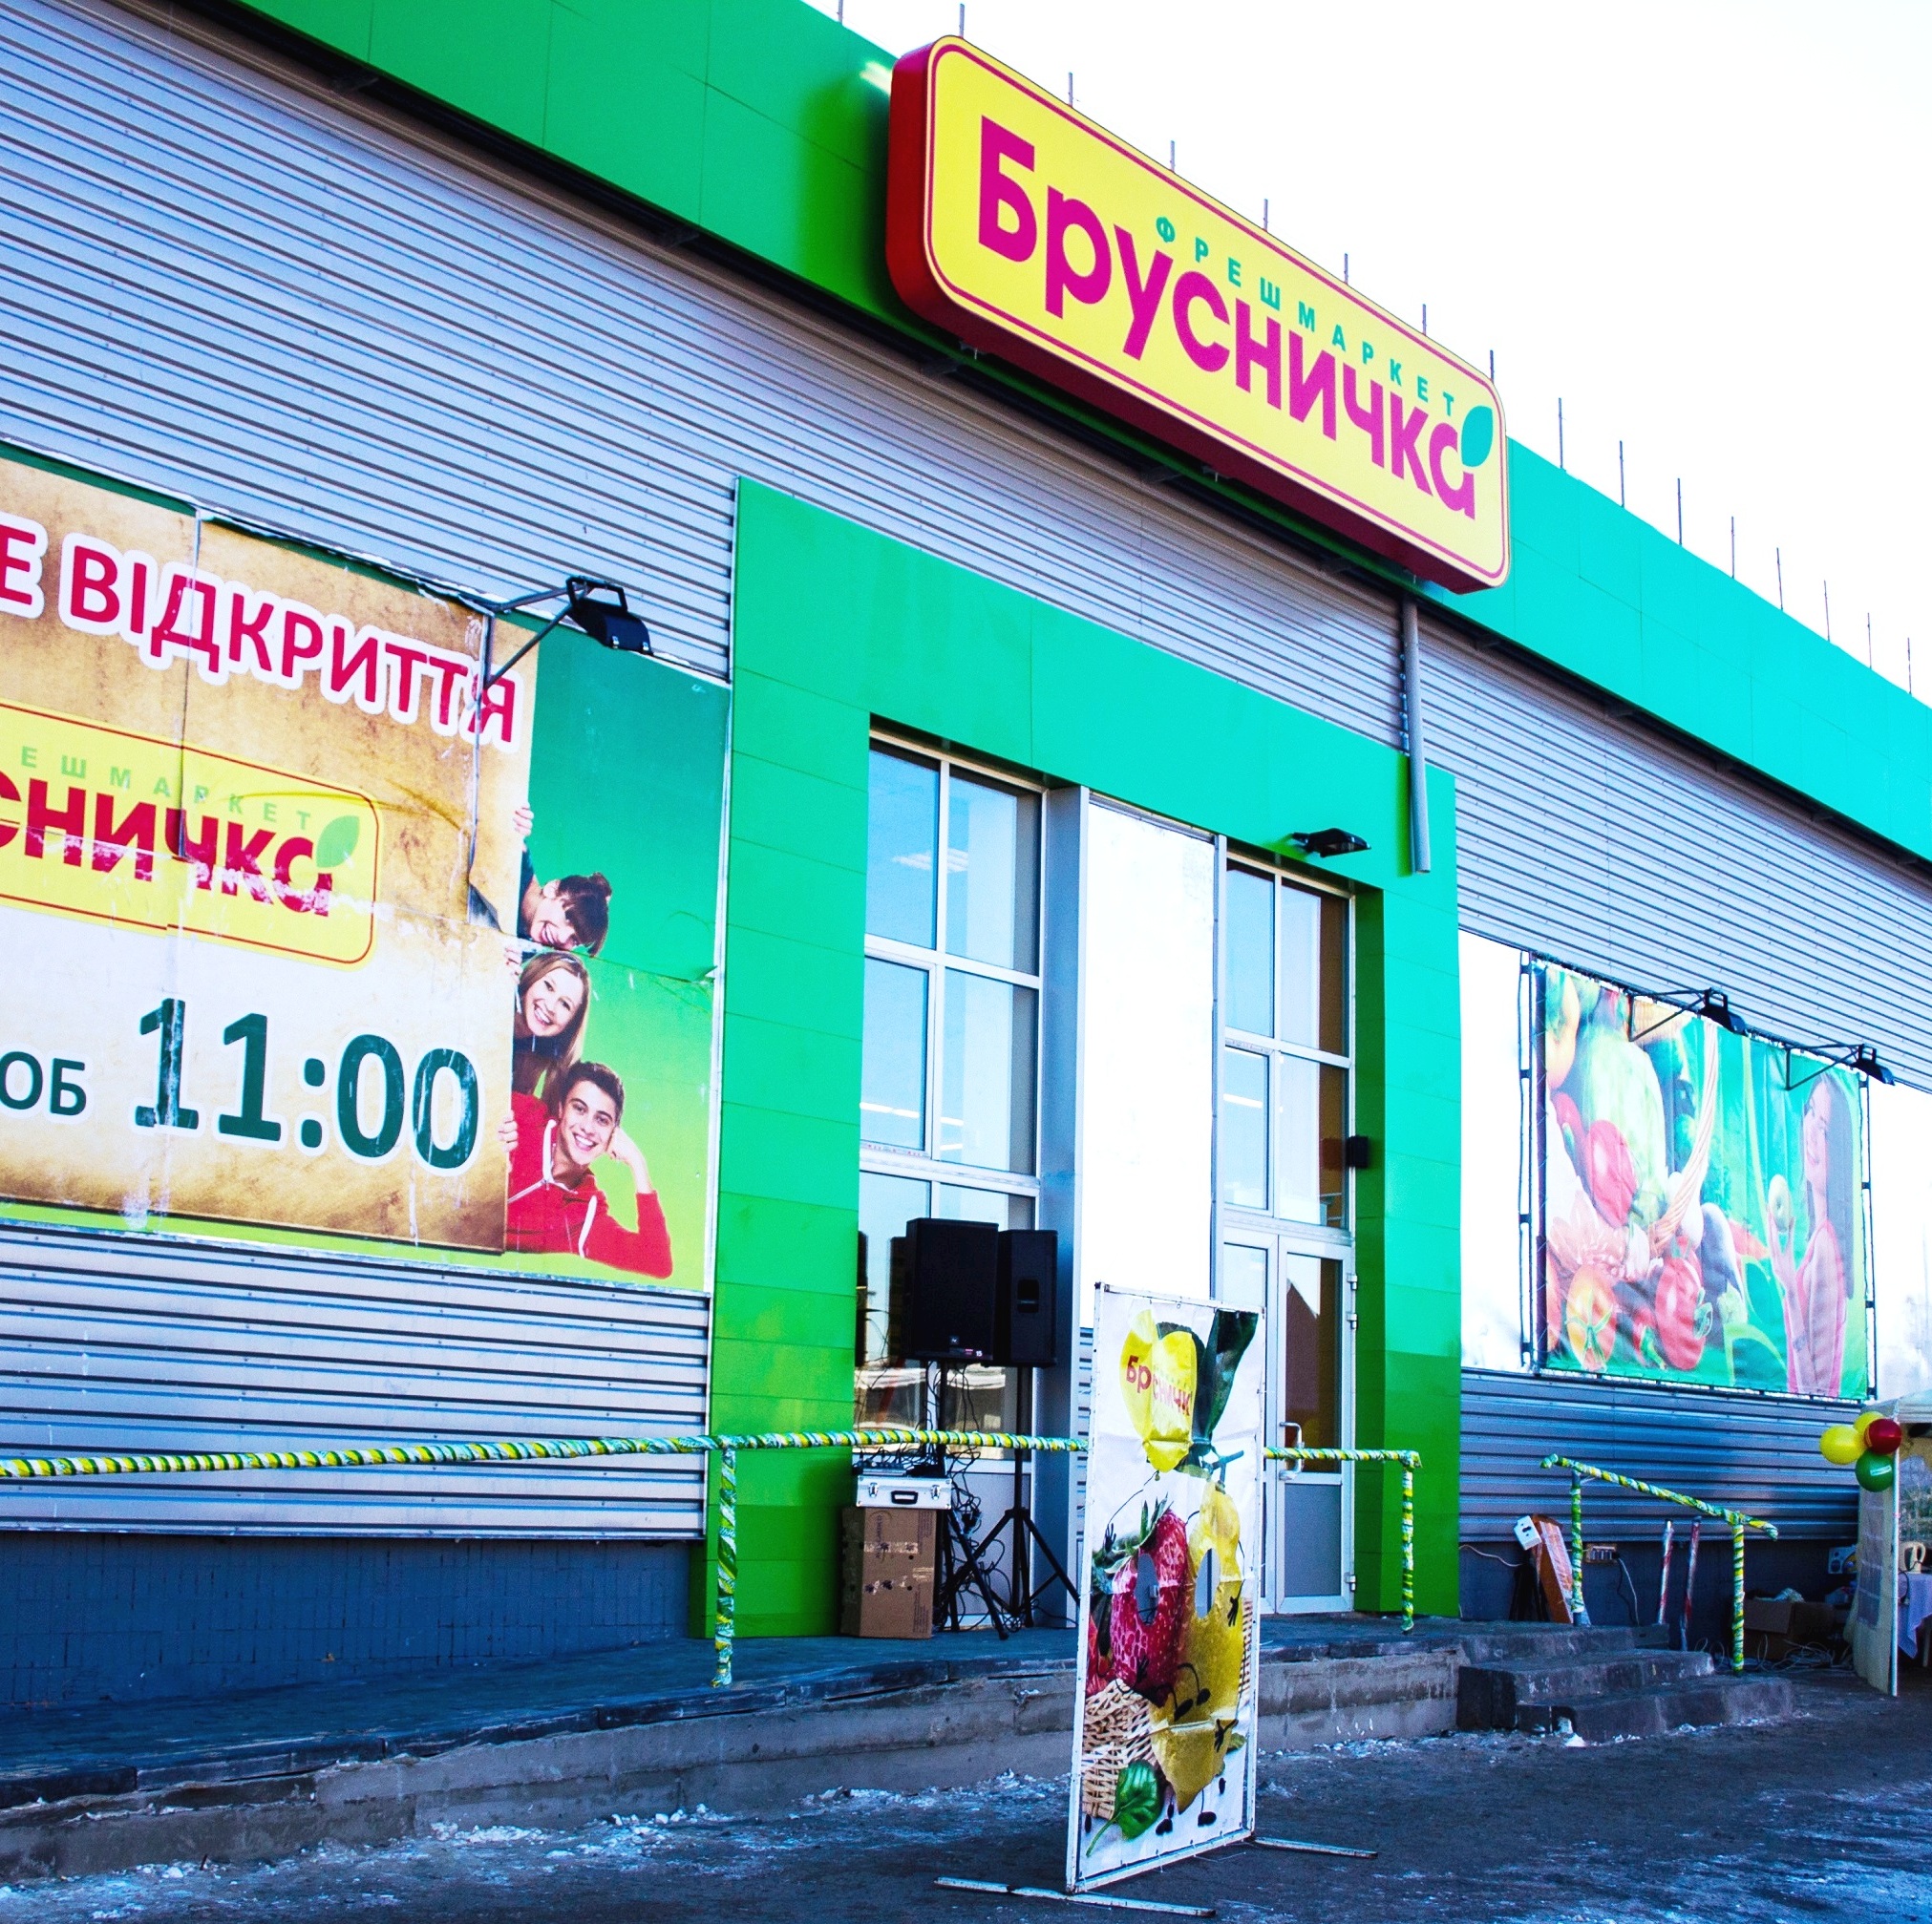 Первый магазин «Брусничка» в новом году